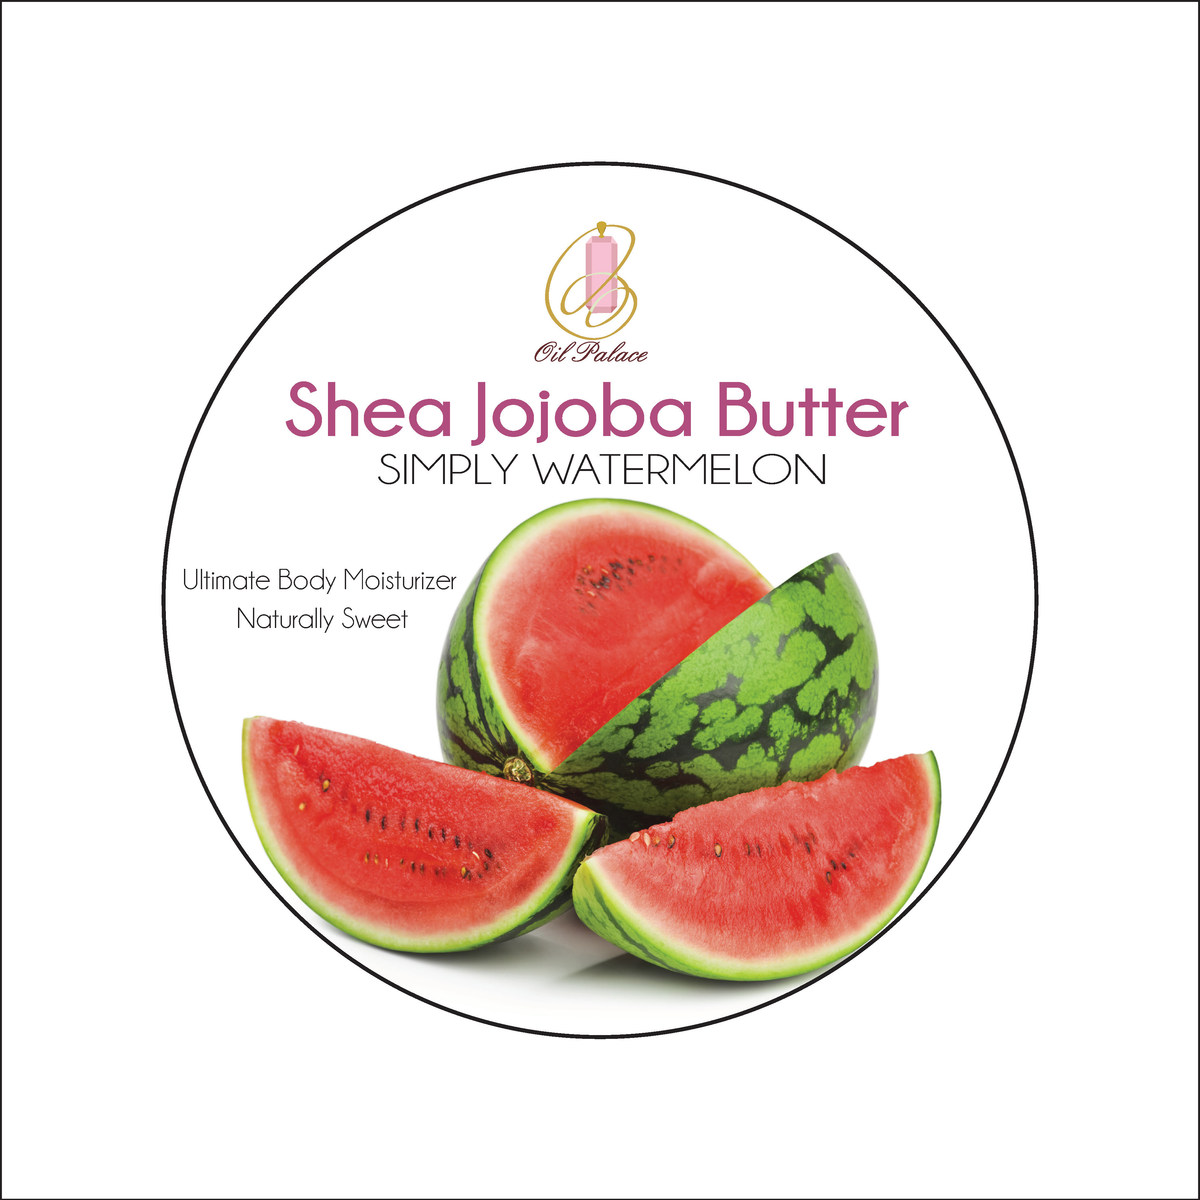 Simply Watermelon Shea Jojoba Butter 8oz